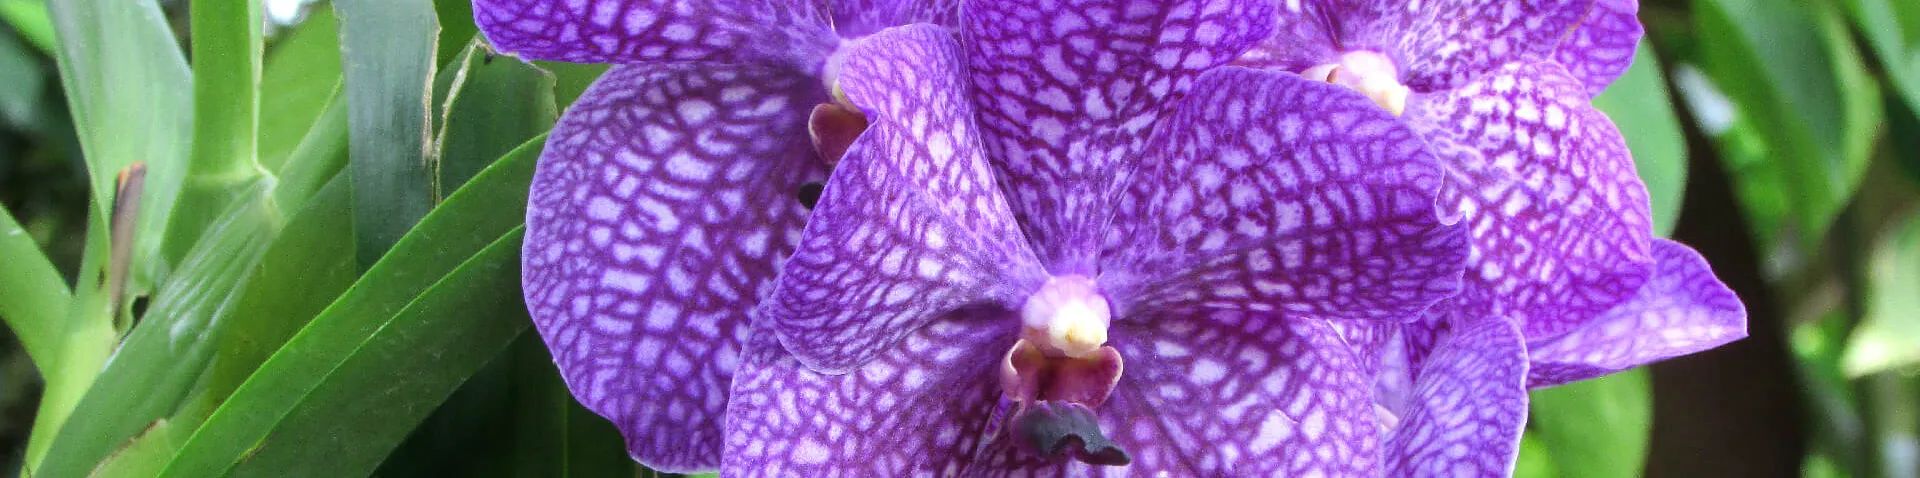 Lila Orchidee mit weißen Punkten